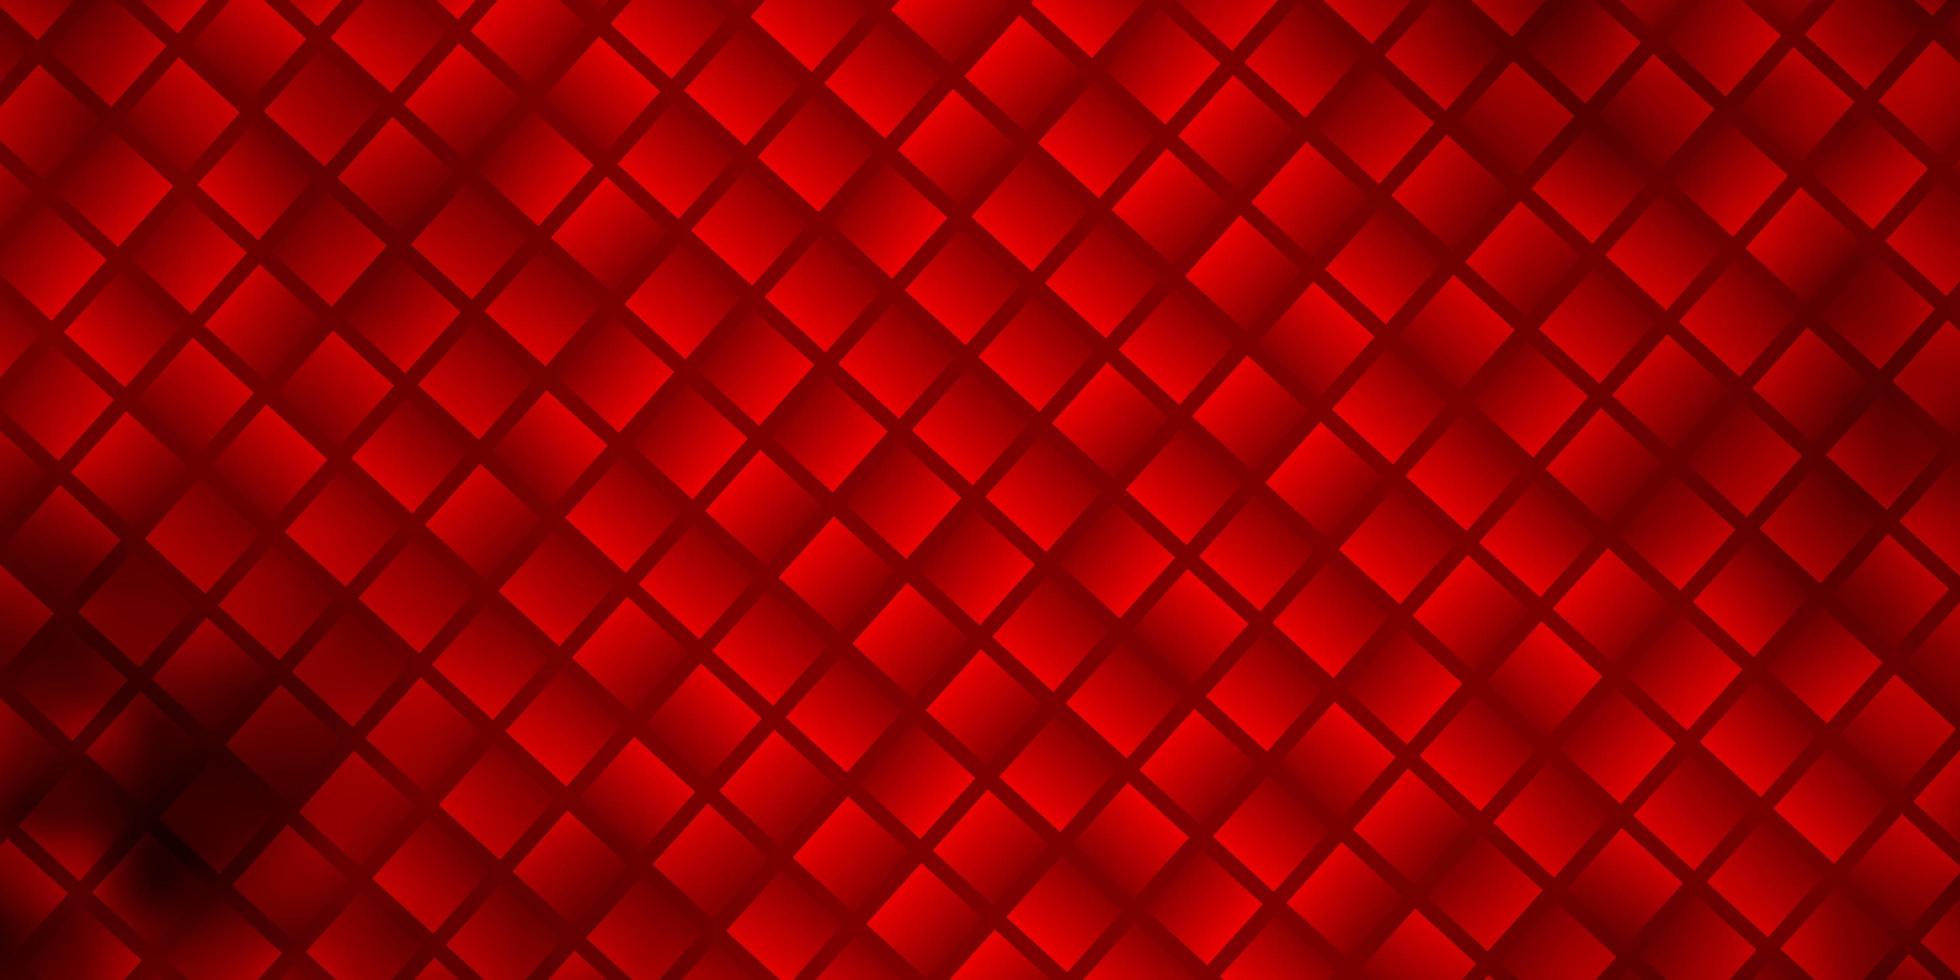 layout de vetor vermelho claro com retângulos de linhas